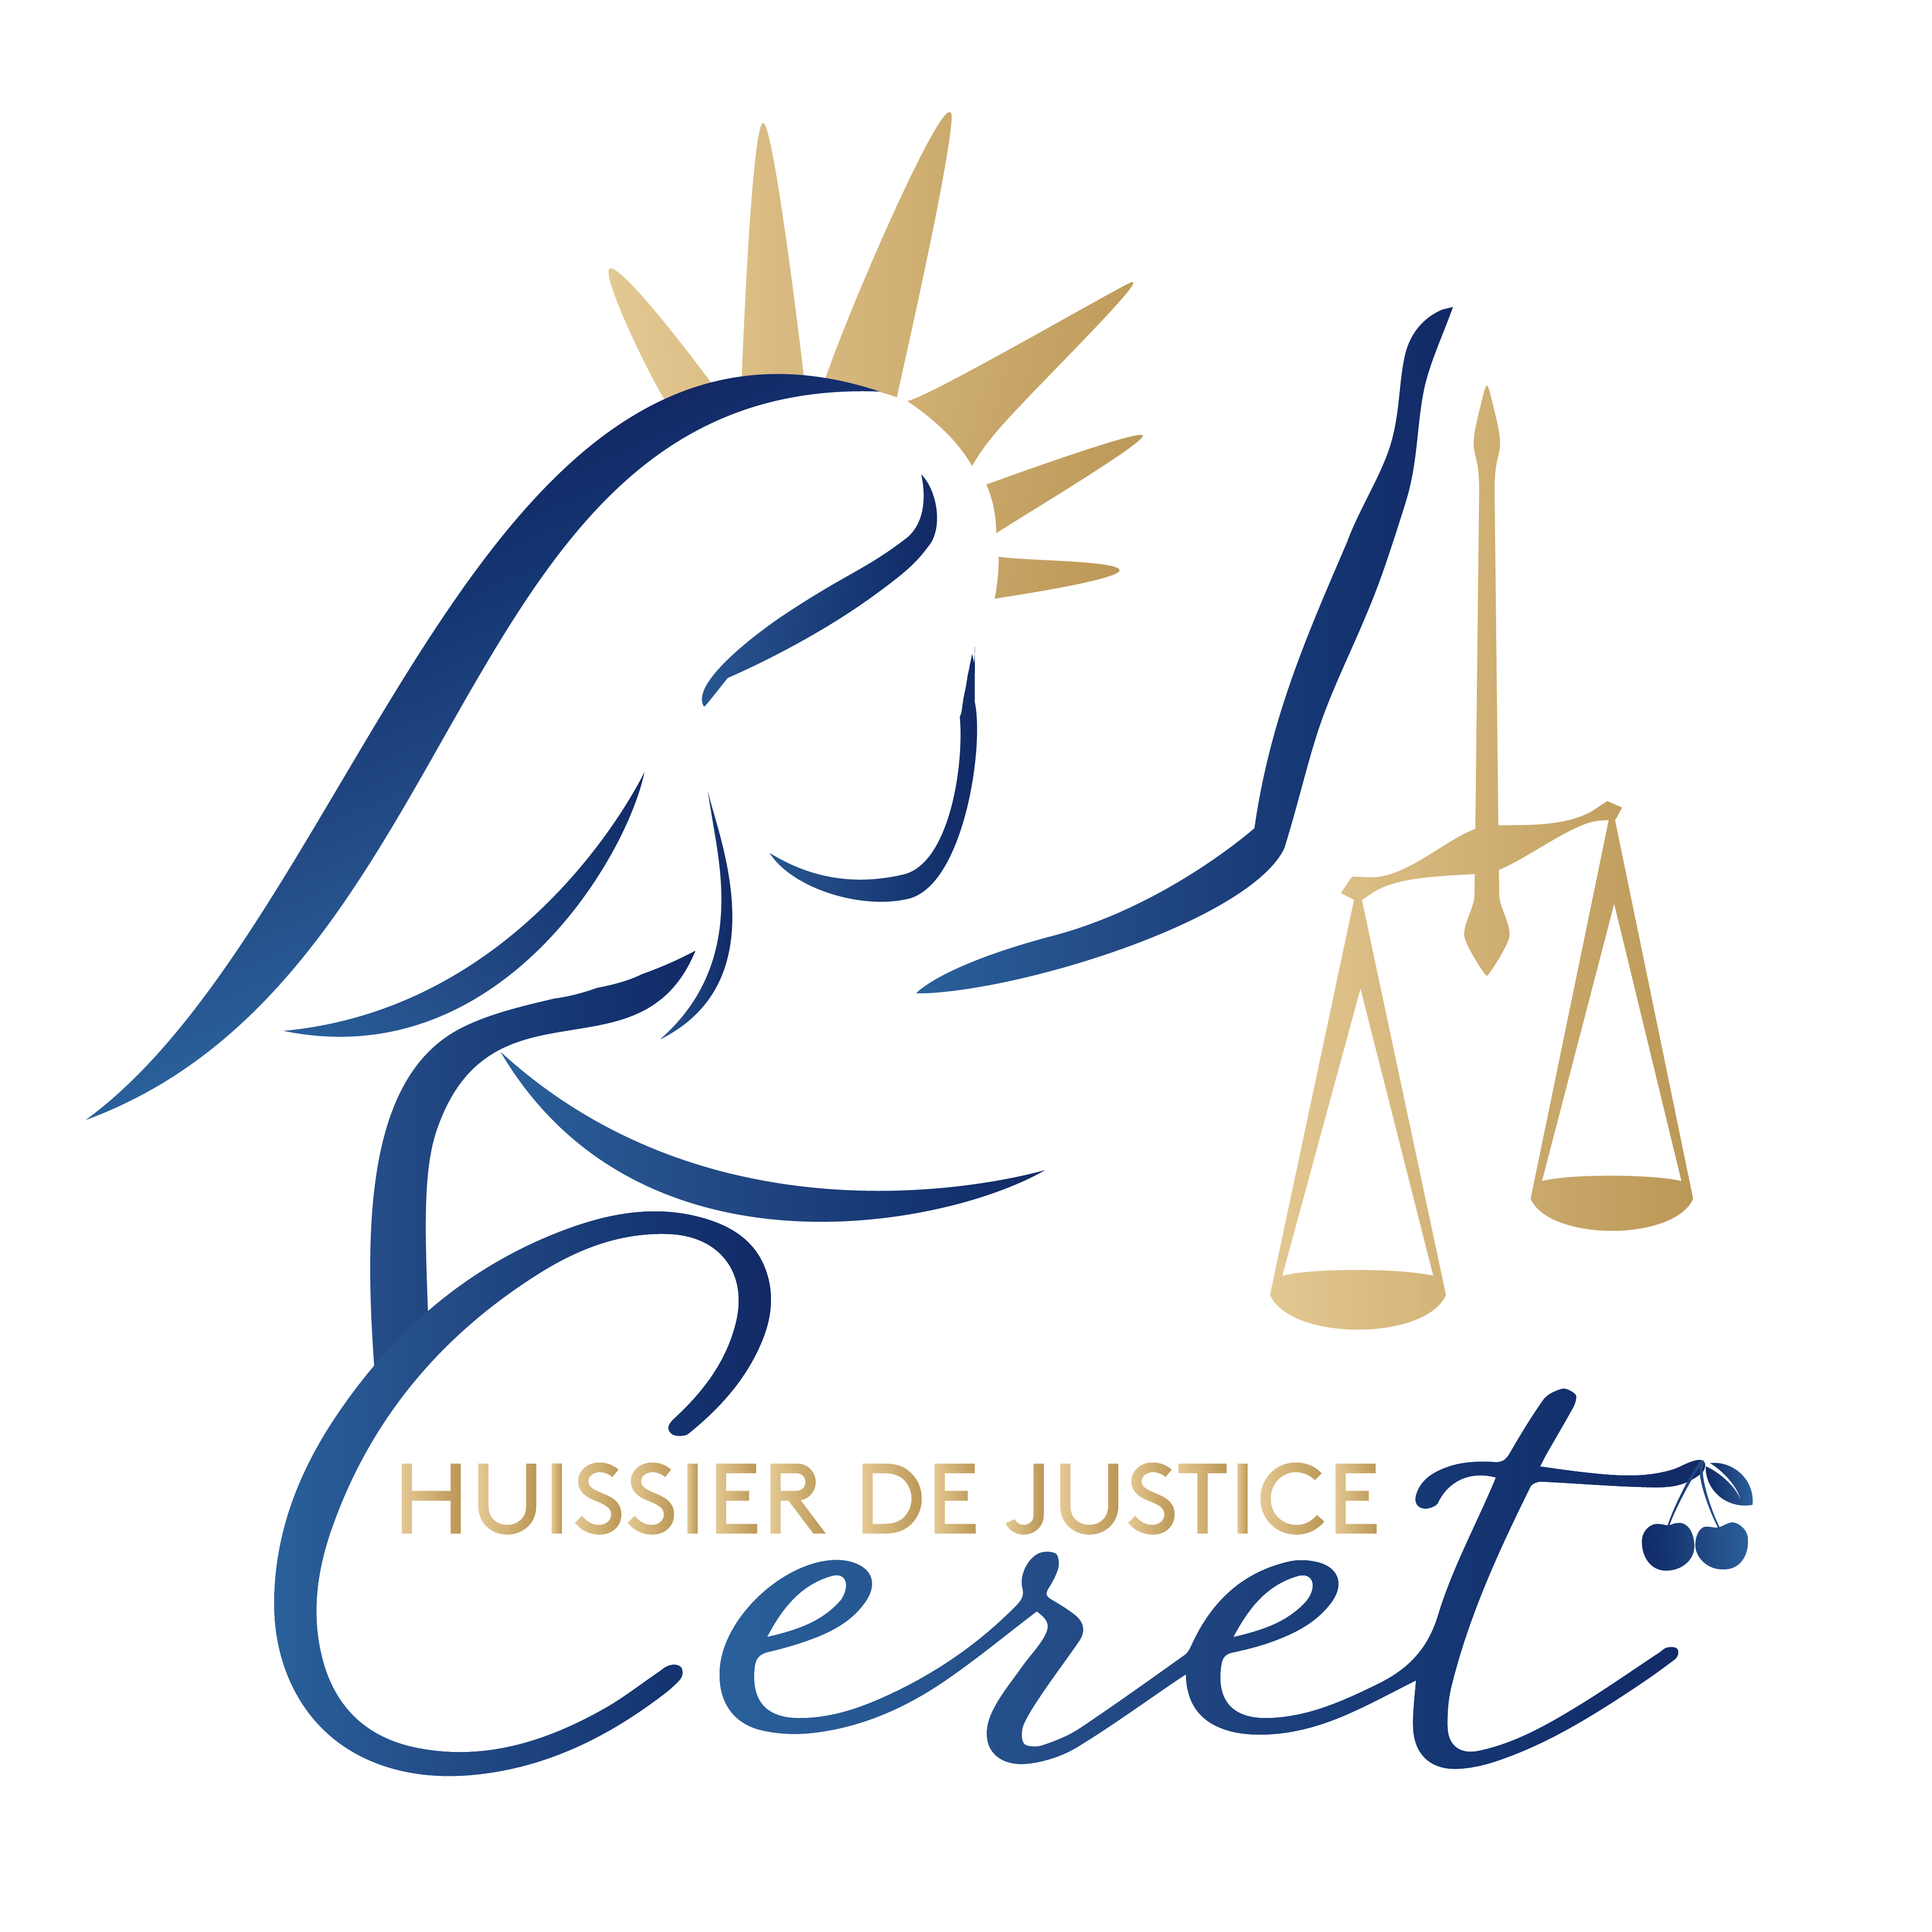 HUISSIER DE JUSTICE  – PYRENEES-ORIENTALES (66) – COMMISSAIRE DE JUSTICE CAMILLE CELLIER